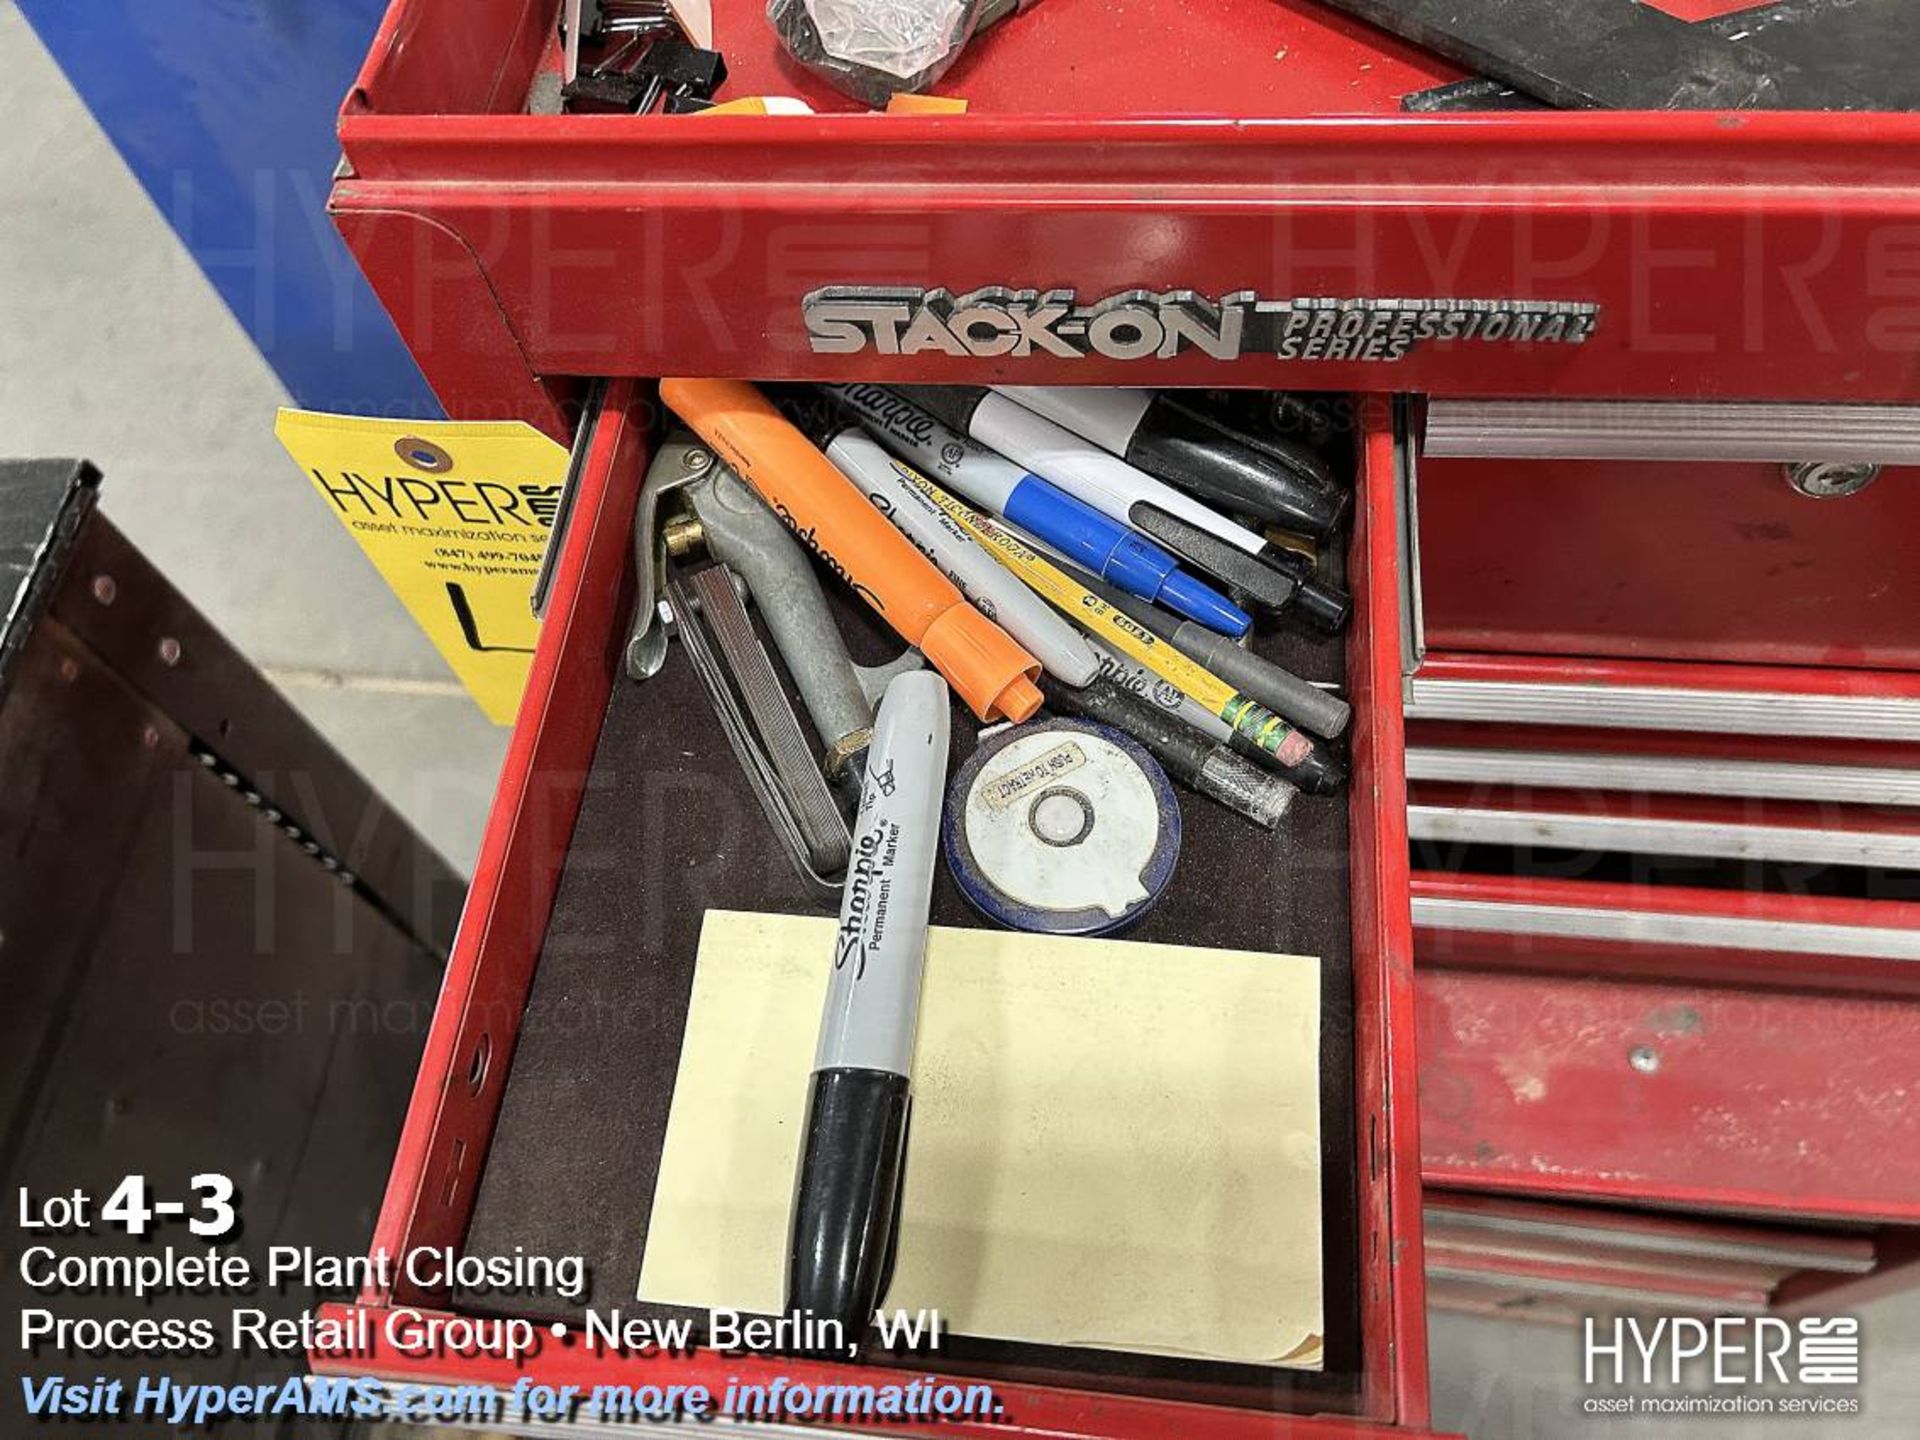 Stack-on roll around toolbox - Bild 3 aus 12